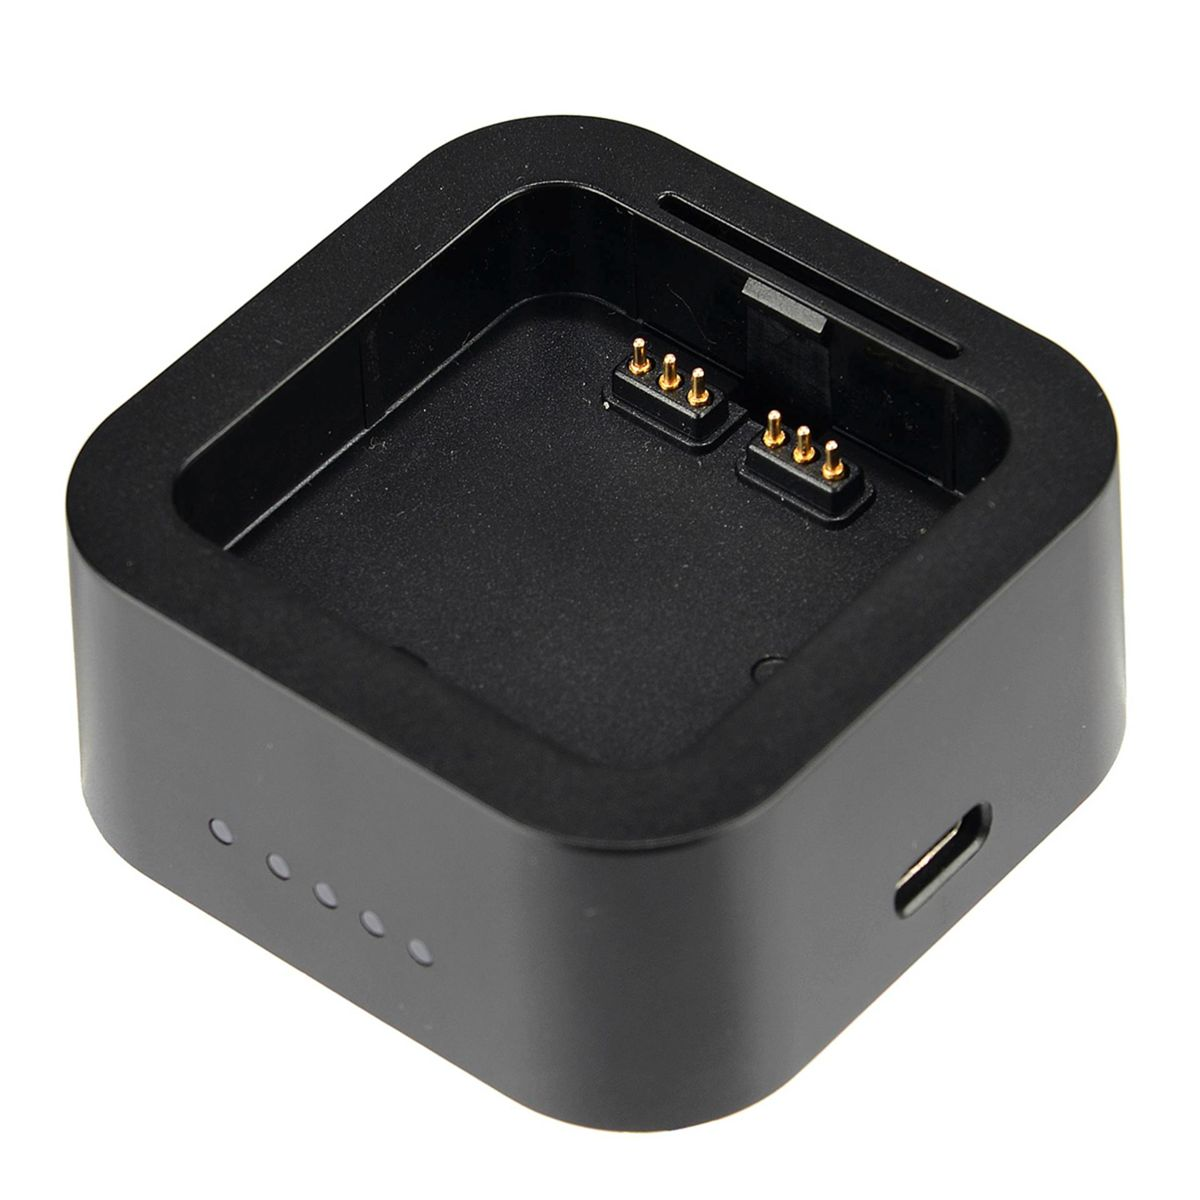 AD200 Pro schwarz Ladestecker USB UC29 GODOX Ladegerät für Universal,